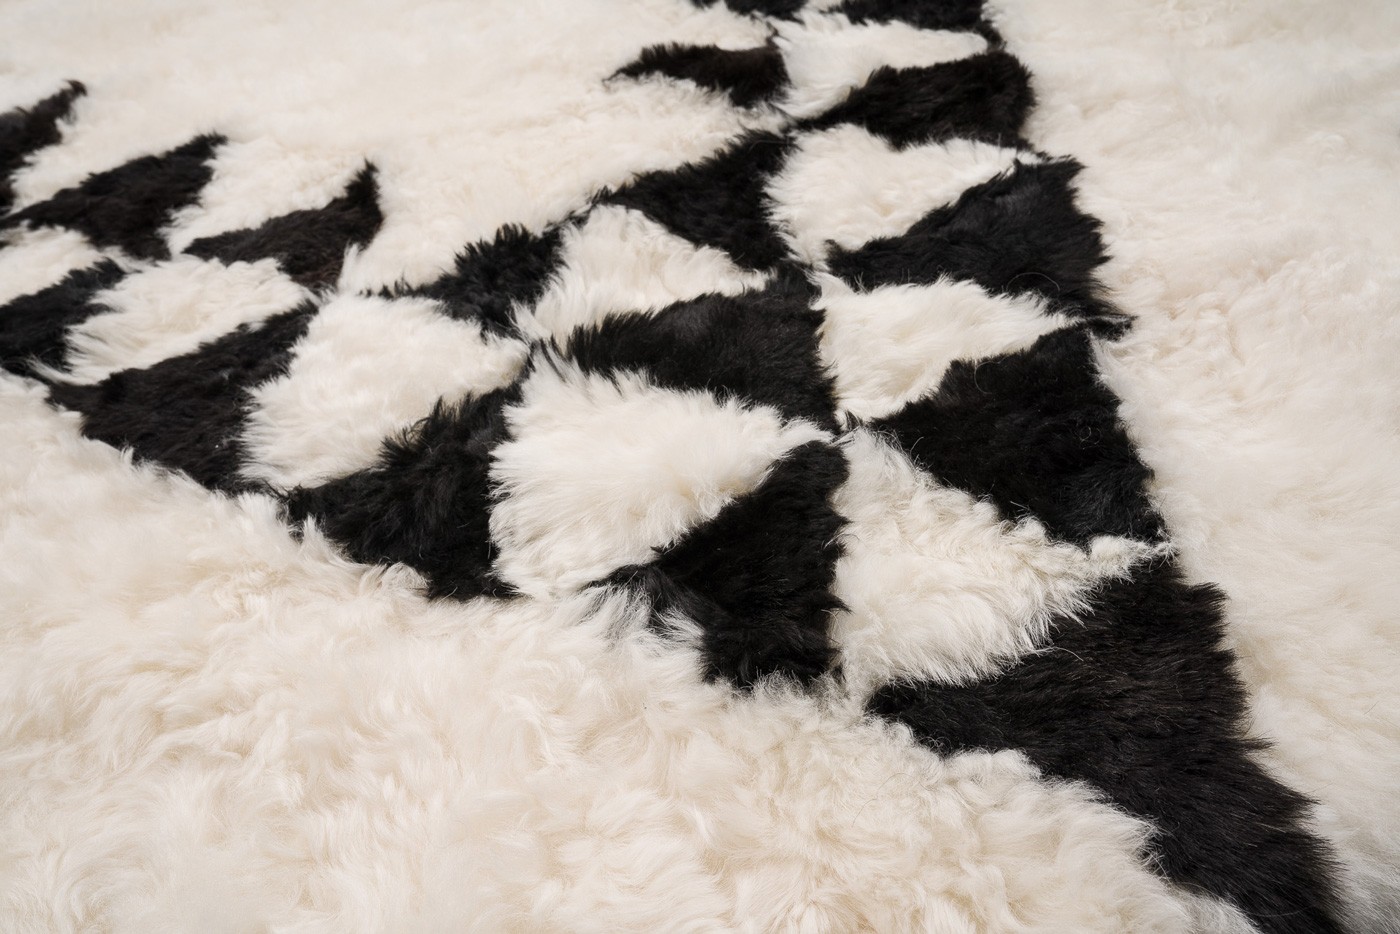 Un motif Berbère assumé très délicat pour ce tapis haut-de-gamme en peau de mouton blanche et noire fabriqué dans nos ateliers de Strasbourg